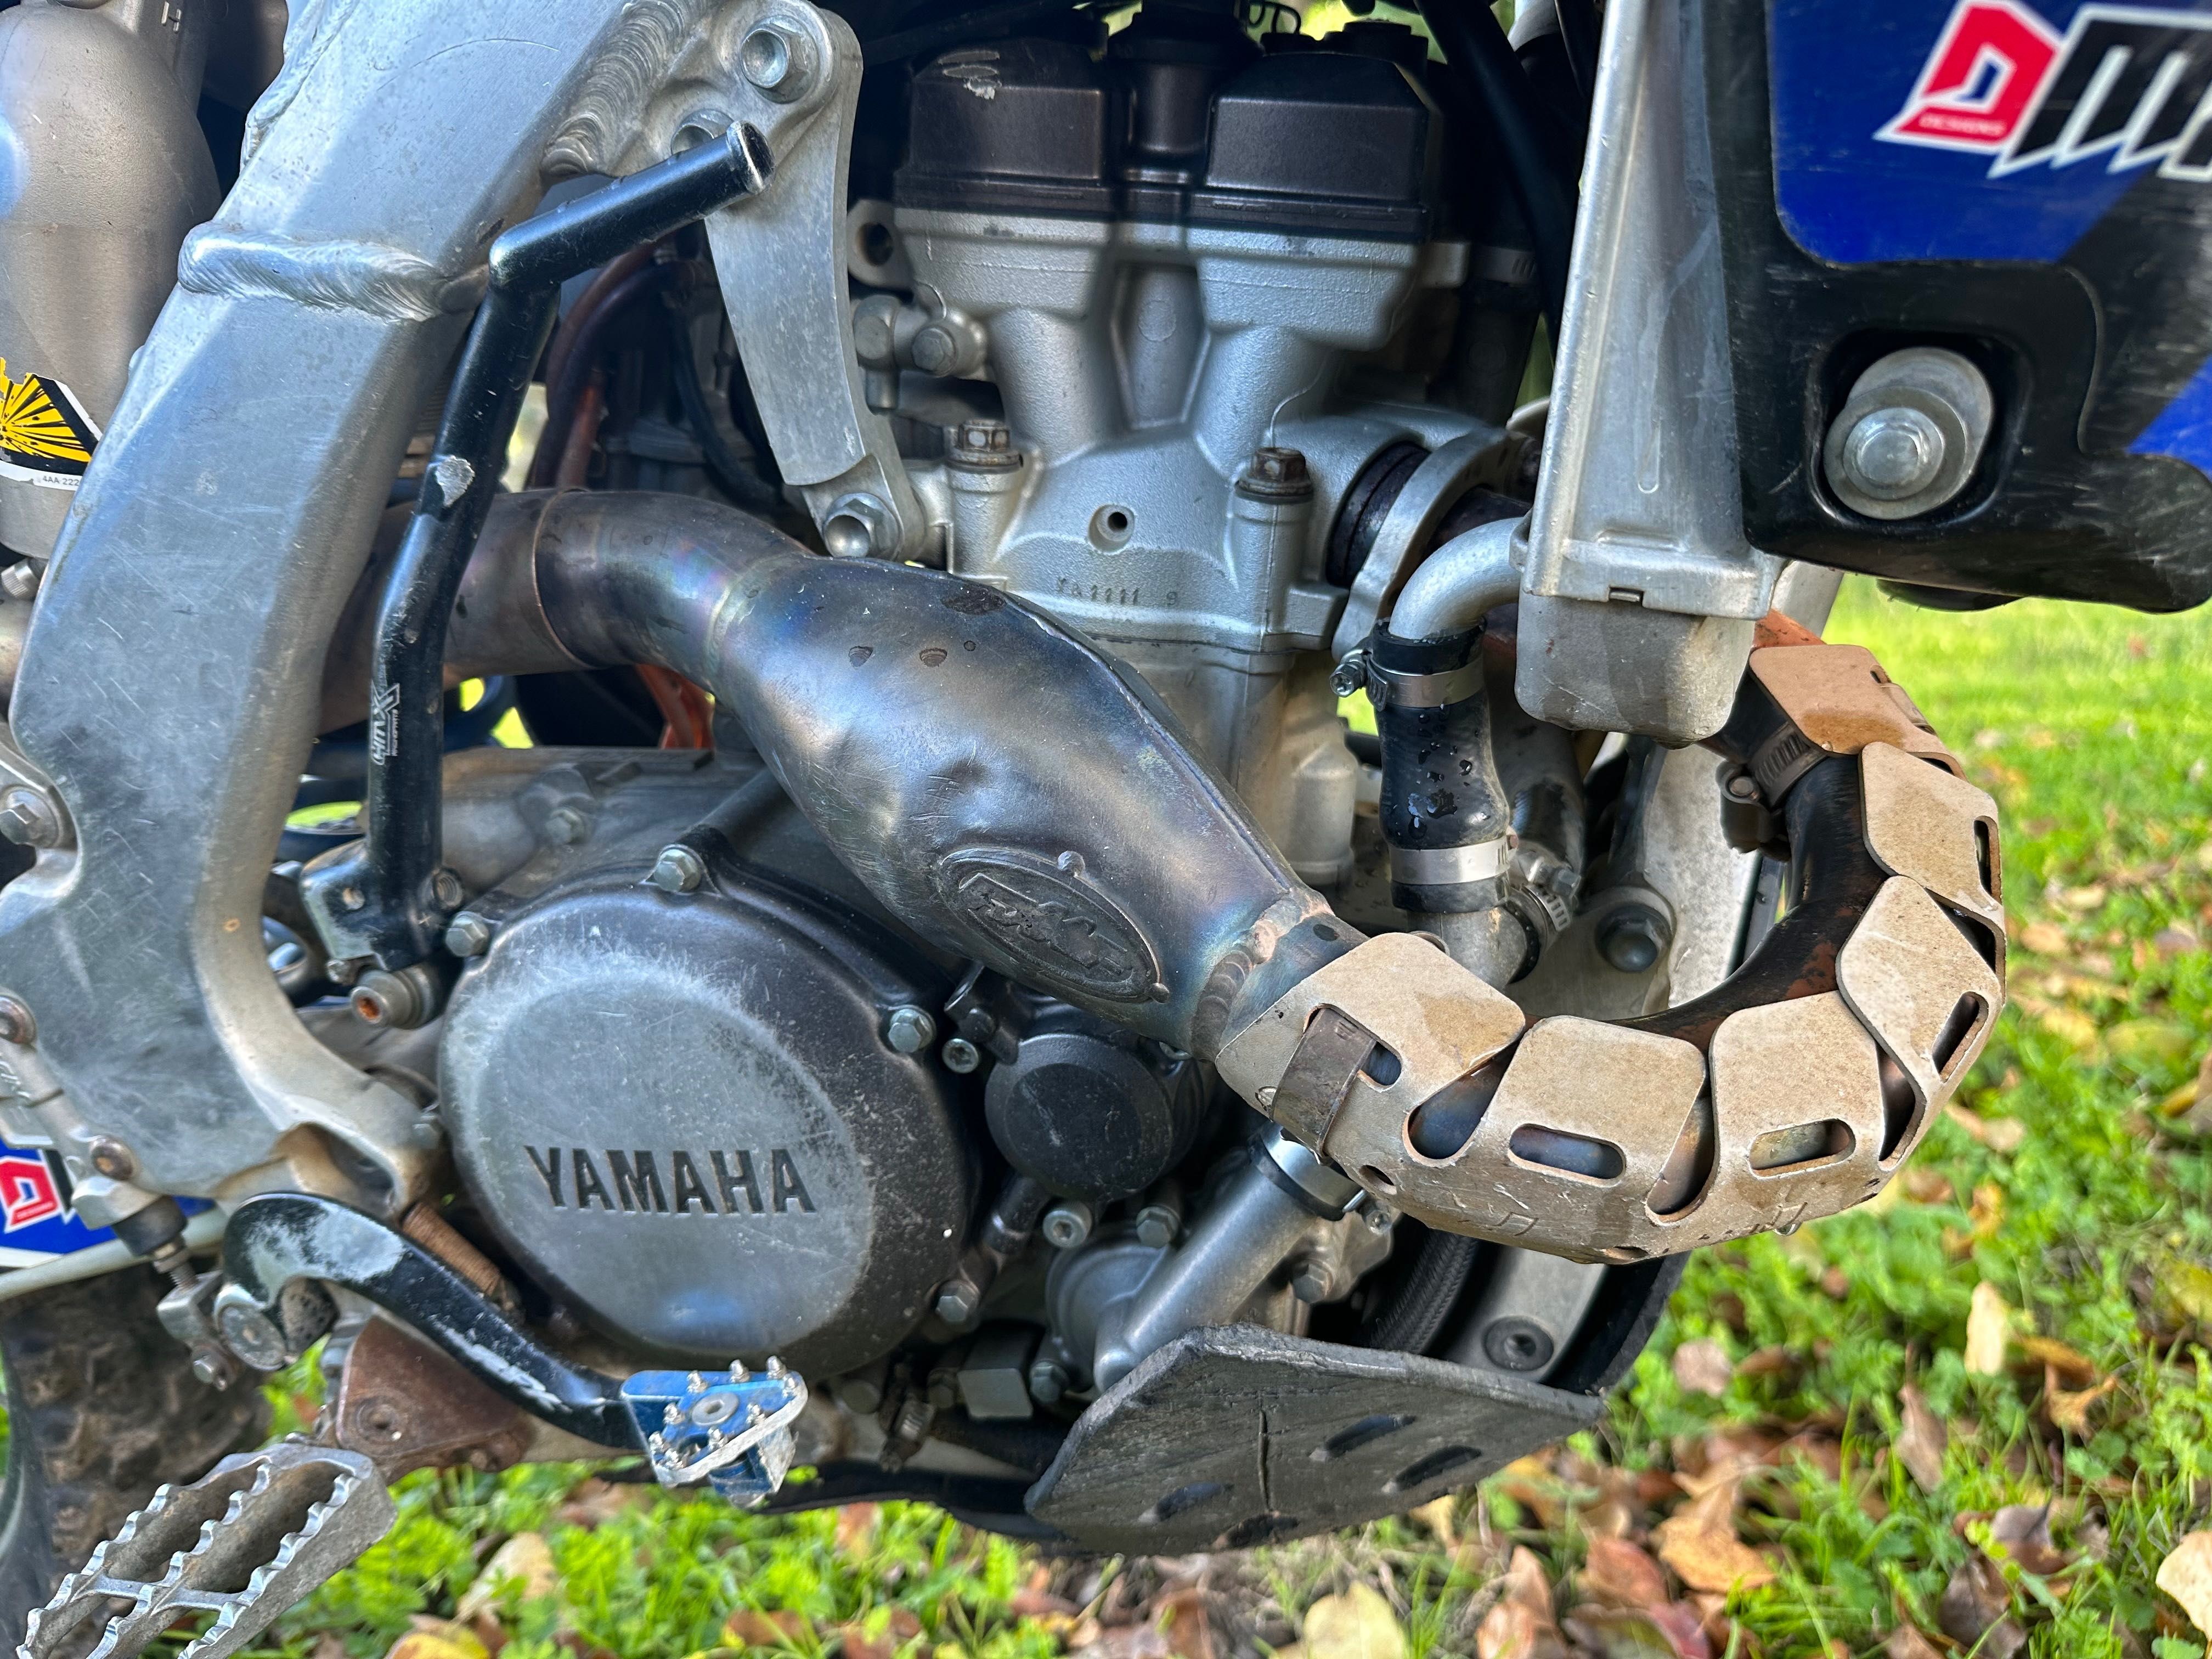 Yamaha yzf 250 com escape especial